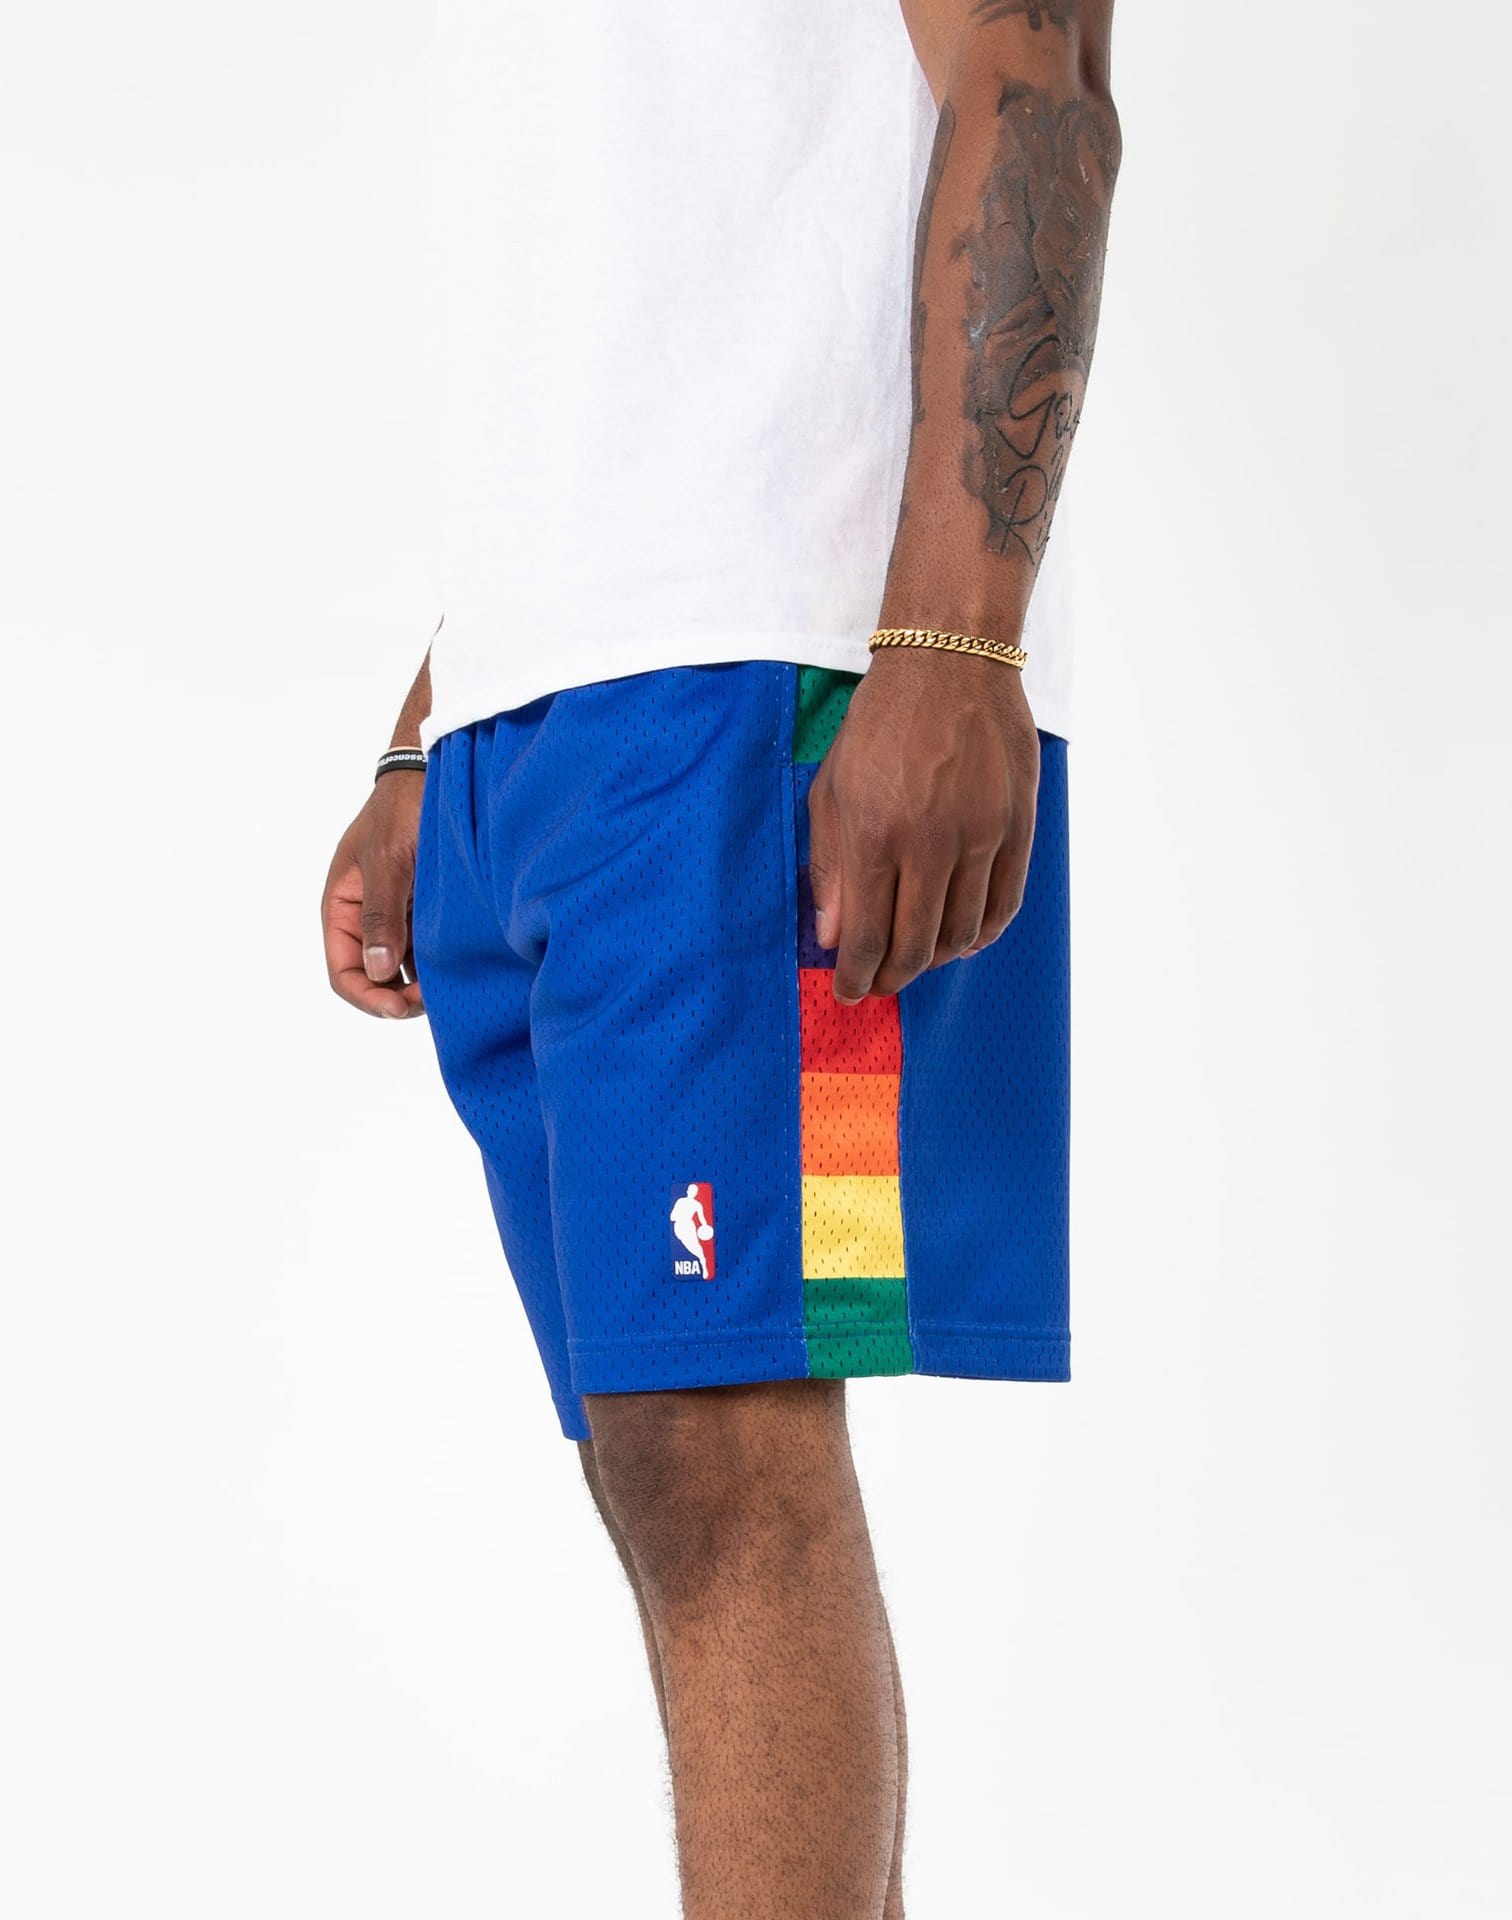 Official NBA Mitchell & Ness Shorts, NBA Basketball Shorts, Gym Shorts,  Compression Shorts